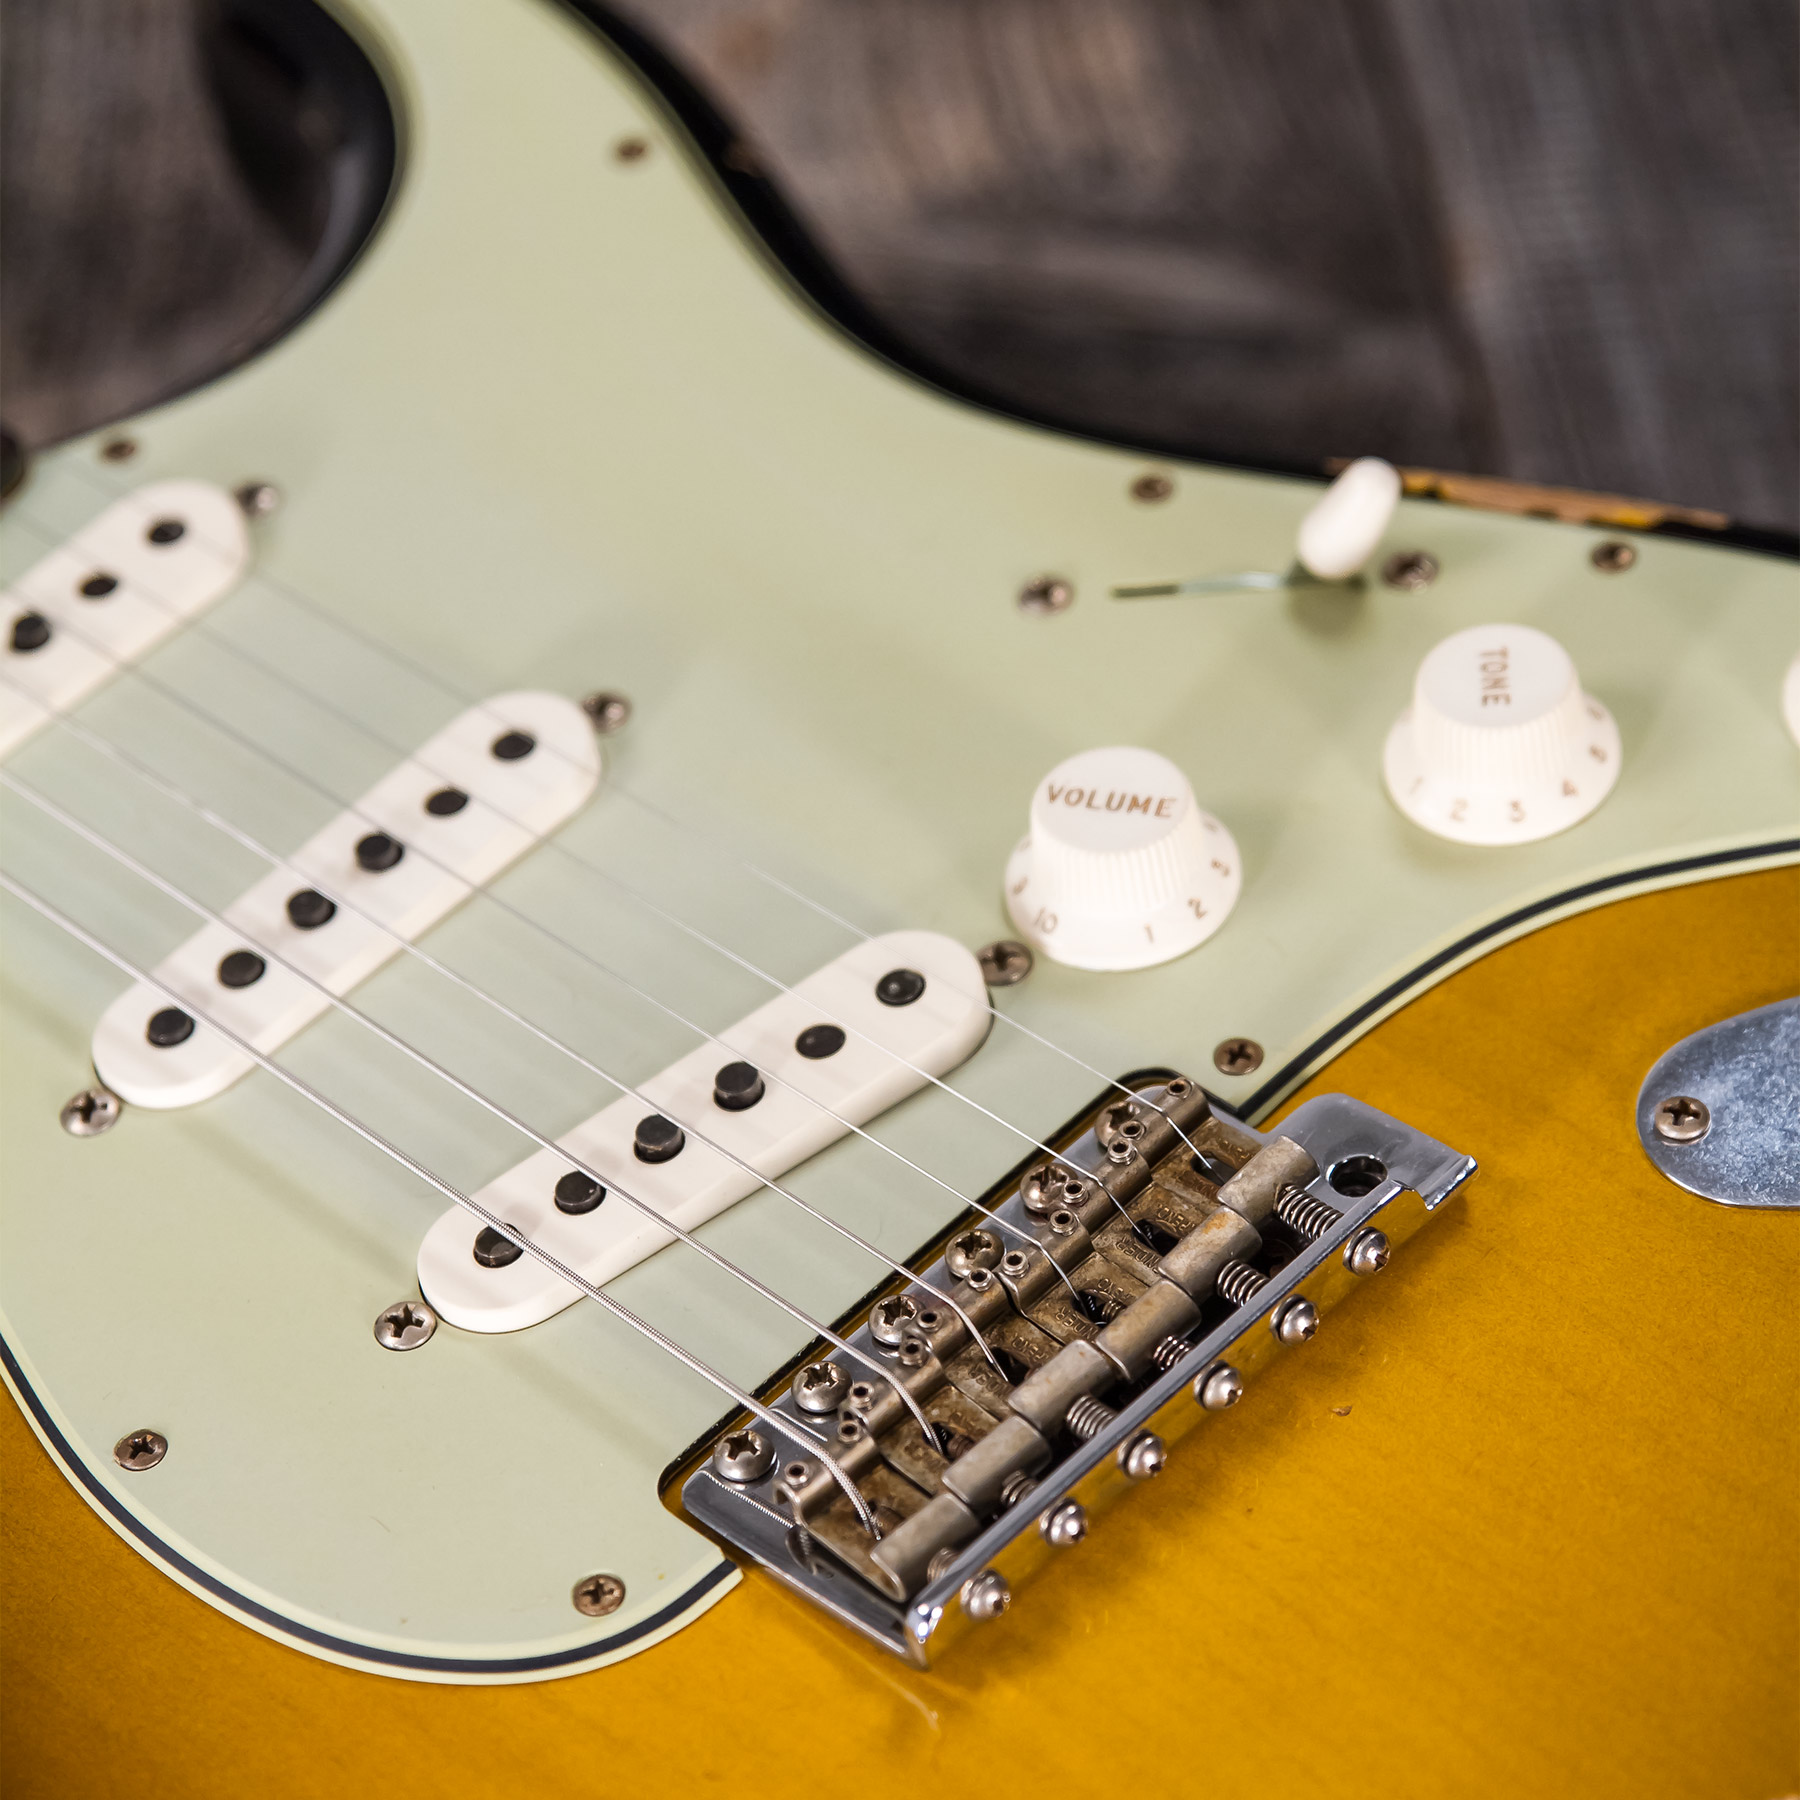 Fender Custom Shop Strat 1959 3s Trem Rw #r117661 - Relic 2-color Sunburst - Str shape electric guitar - Variation 6